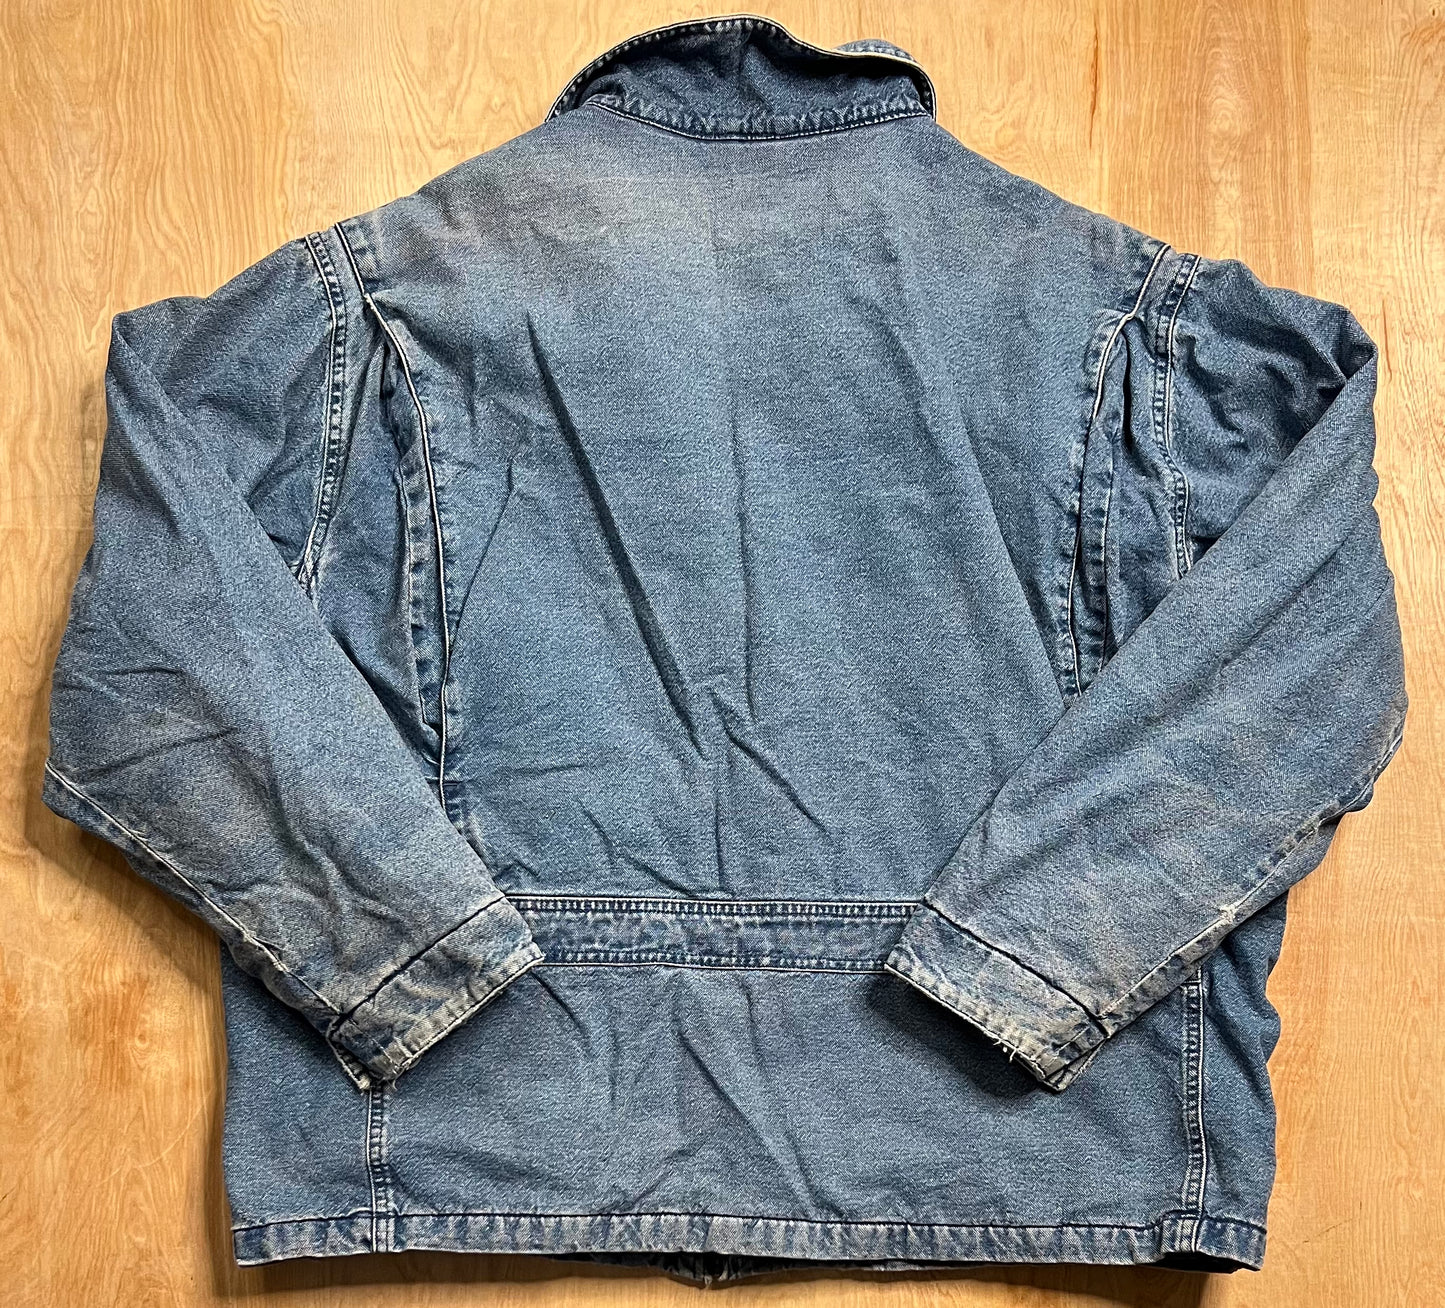 Vintage Eddie Bauer Thinsulate Insulated Jacket